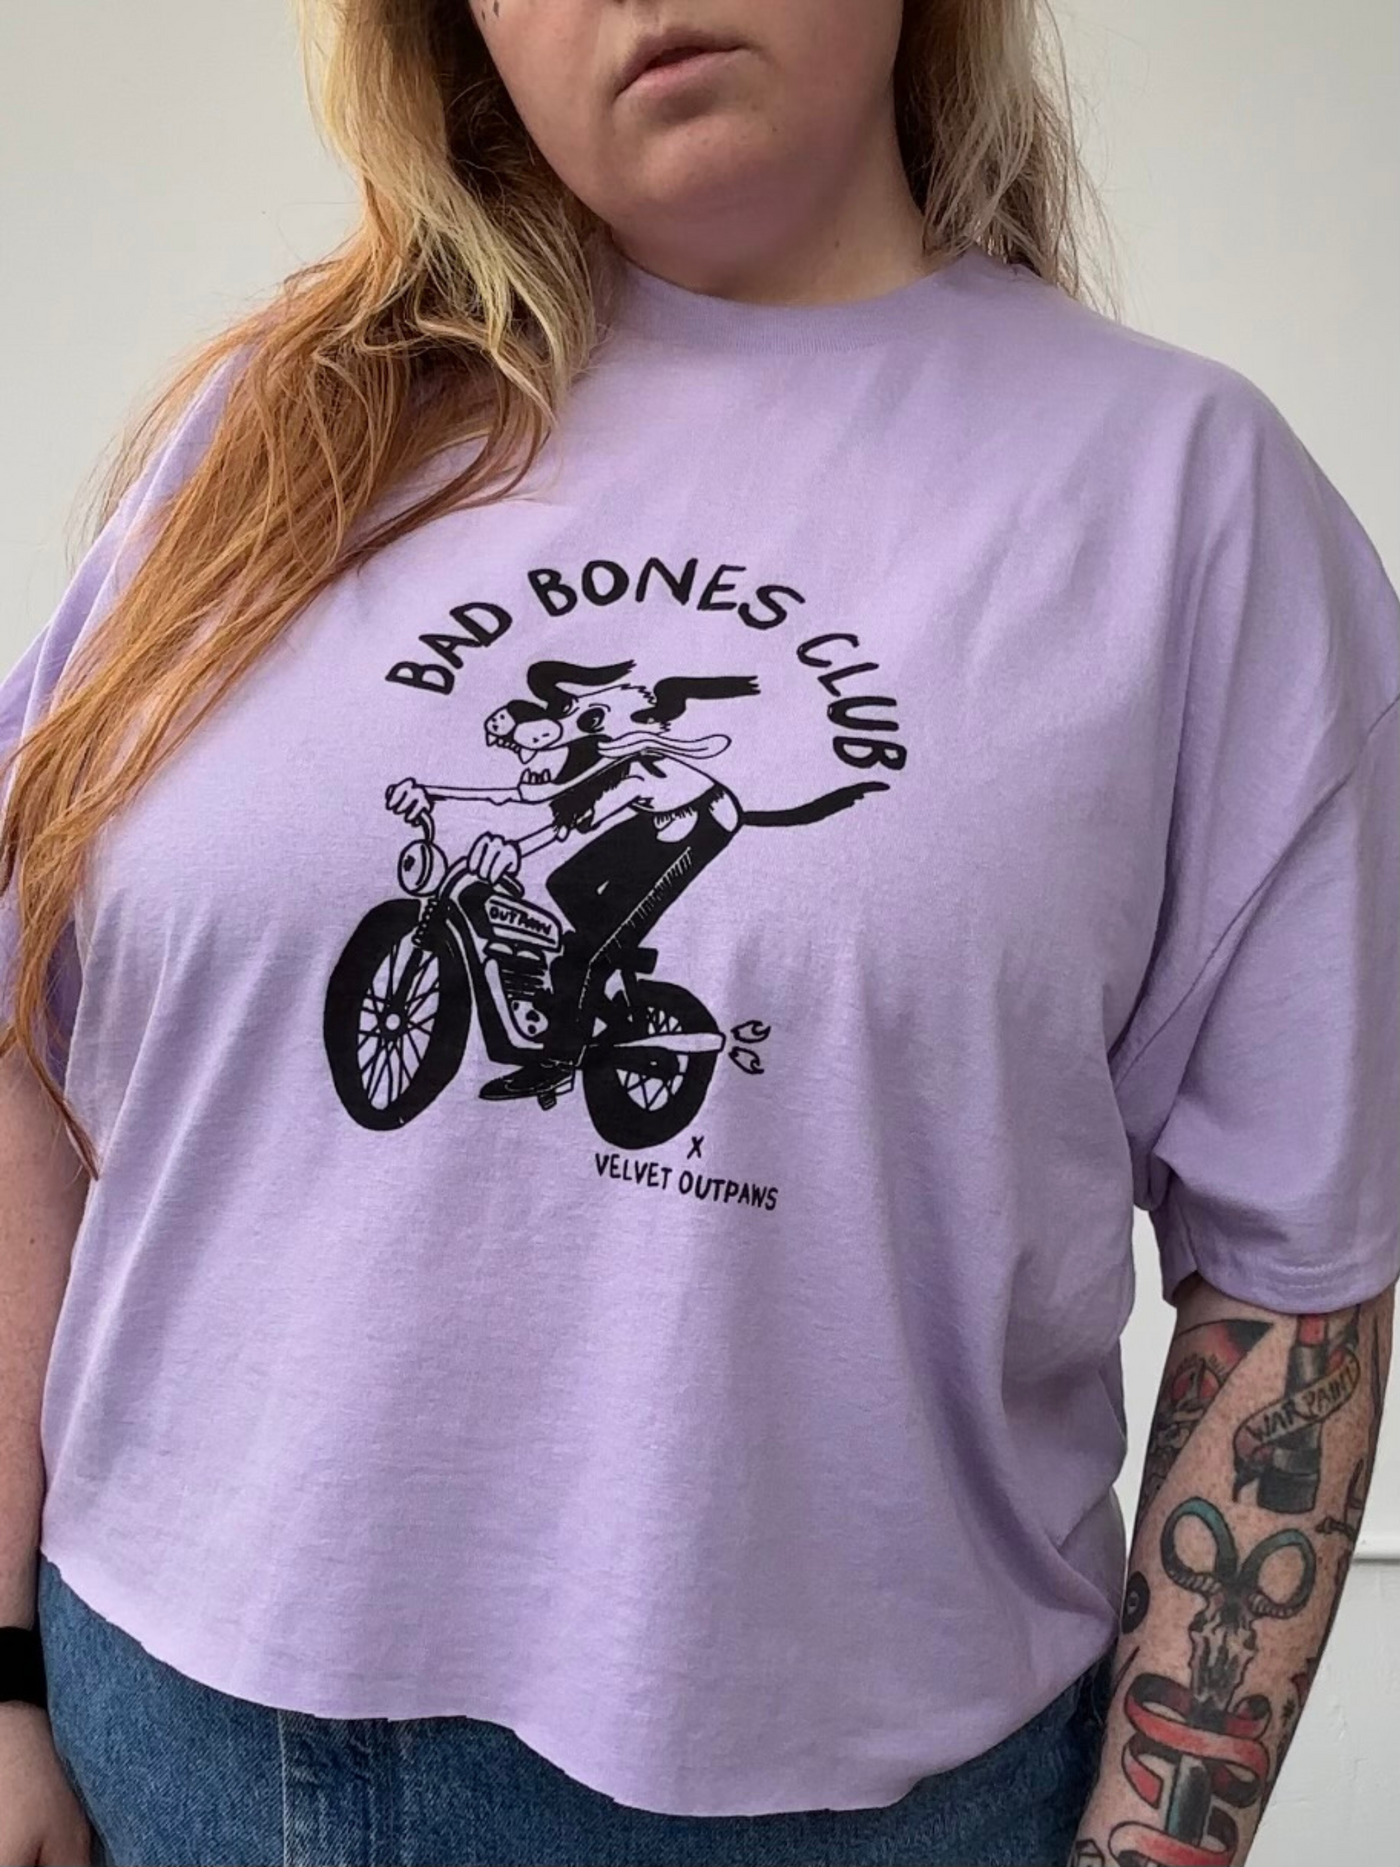 “Bad Bones Club” shirt